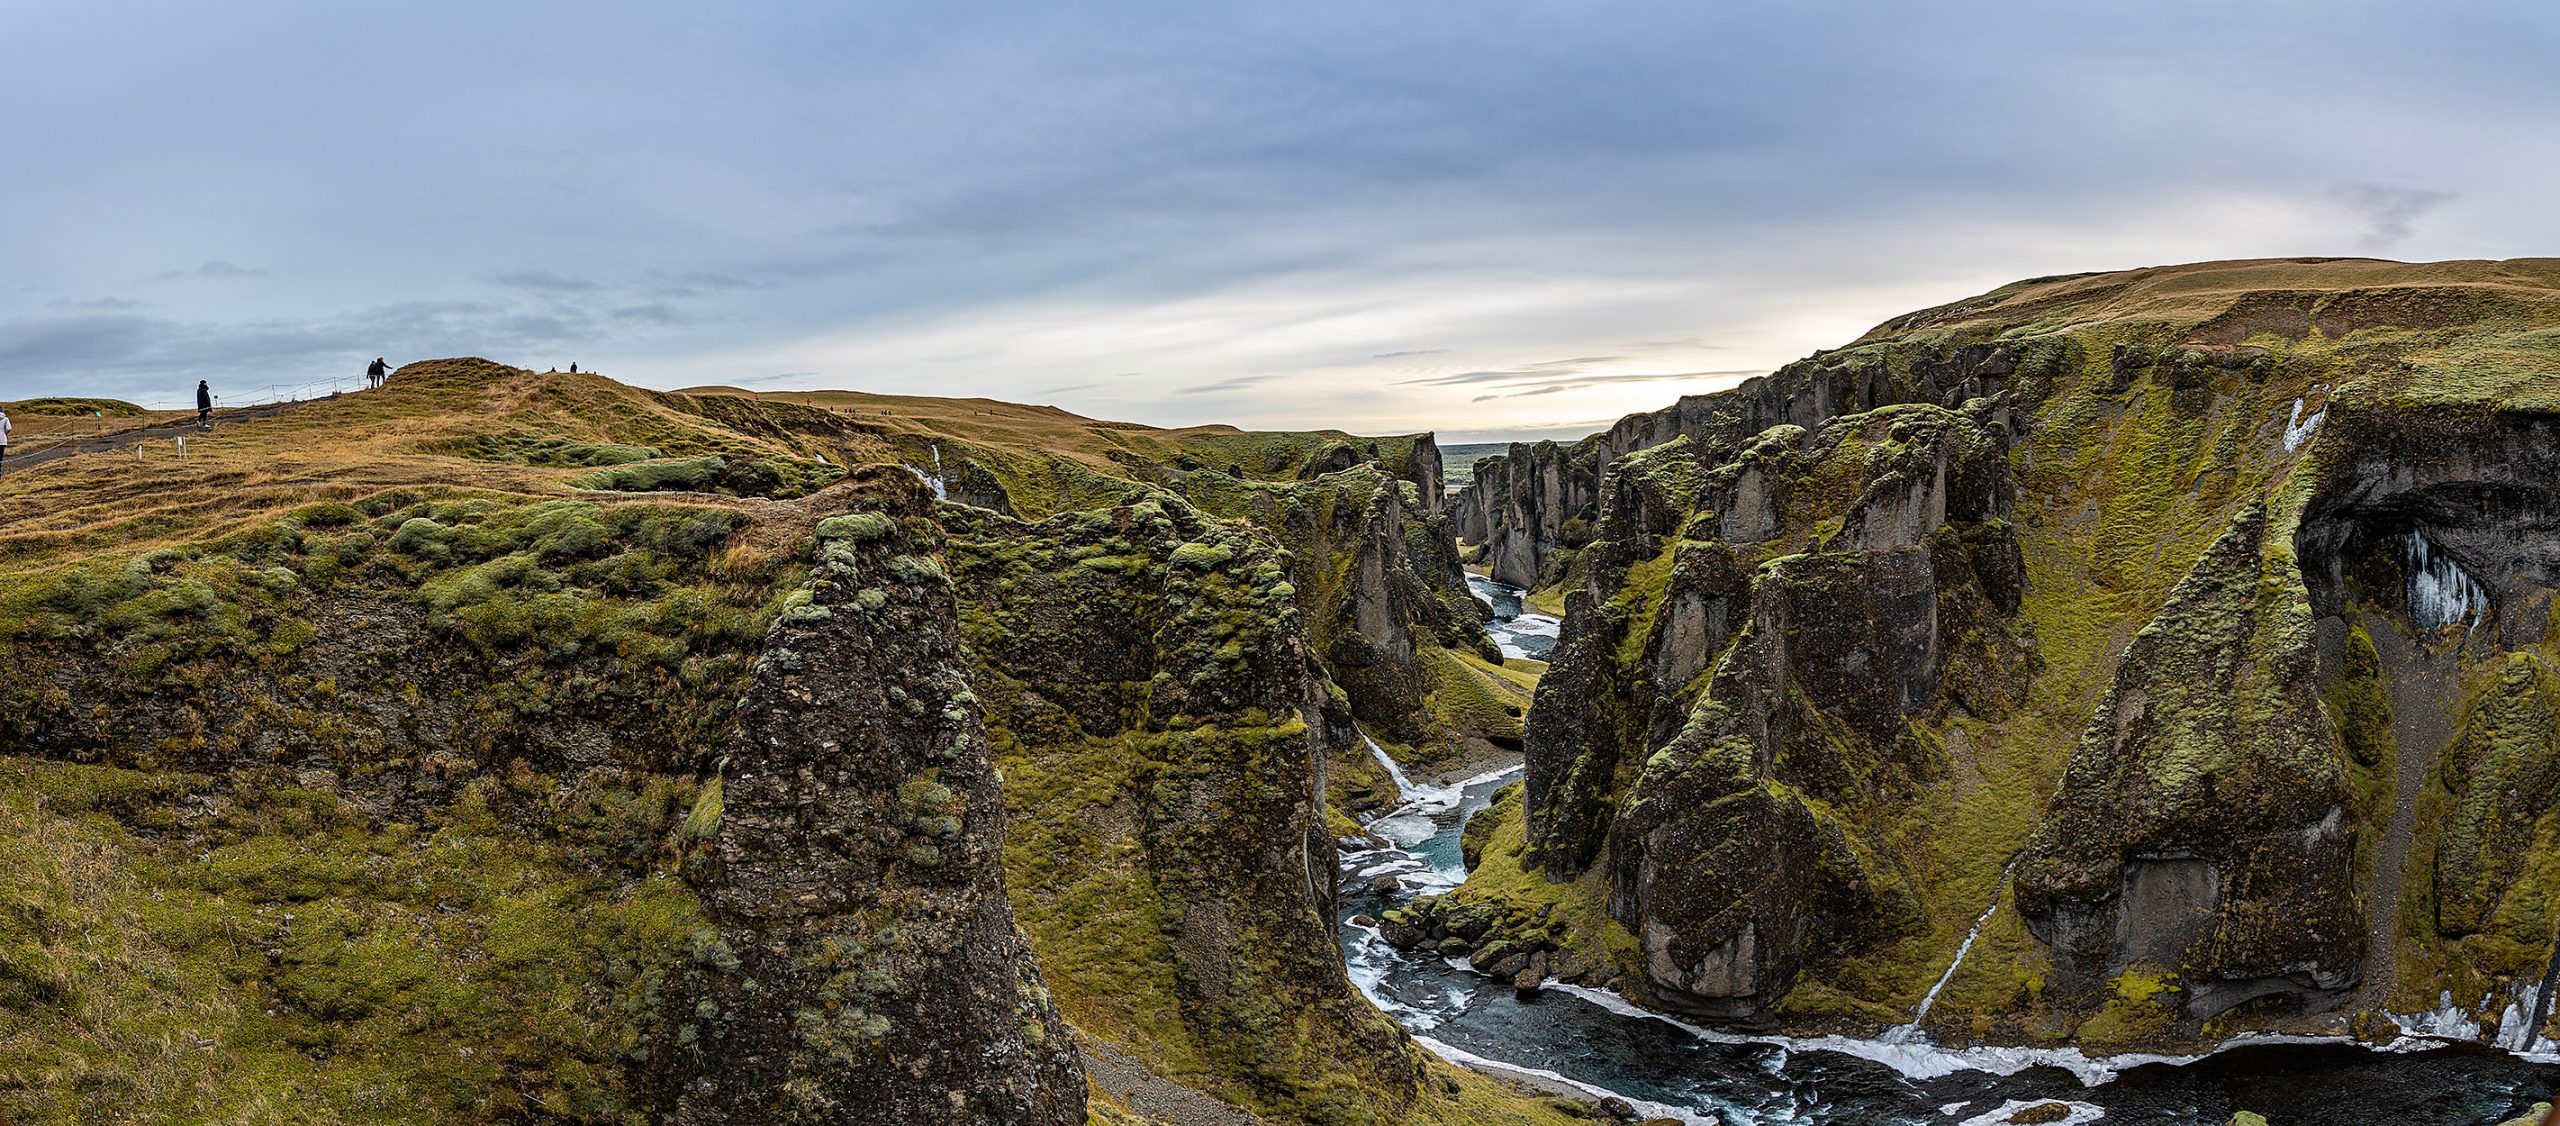 [冰島/南岸] 羽毛峽谷 Fjaðrárgljúfur ，冰島上精緻峽谷地形風景，近維克鎮，冰河湖旁